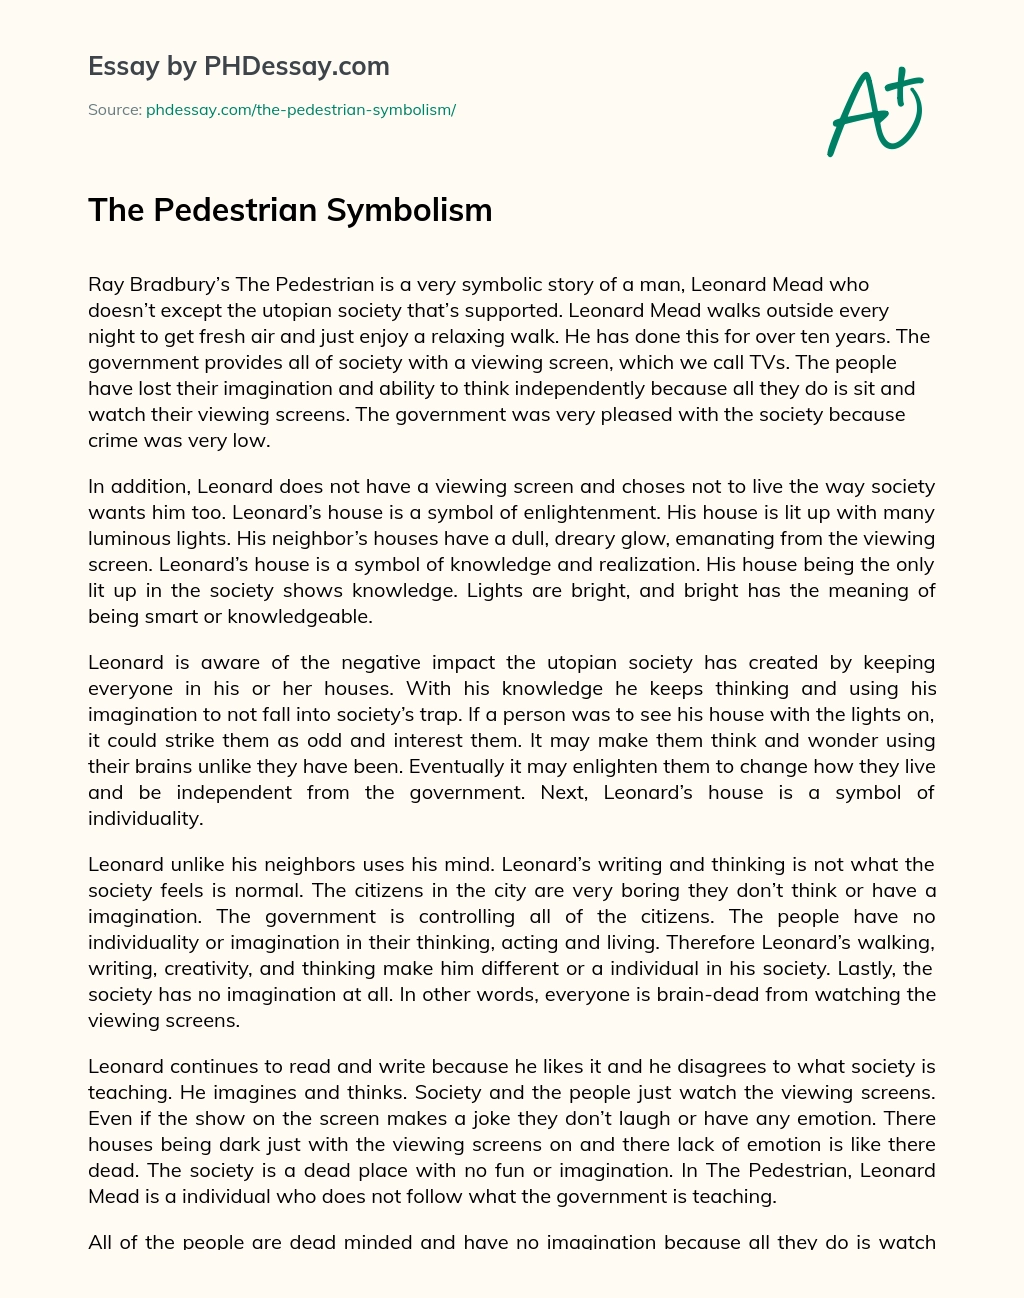 The Pedestrian Symbolism essay